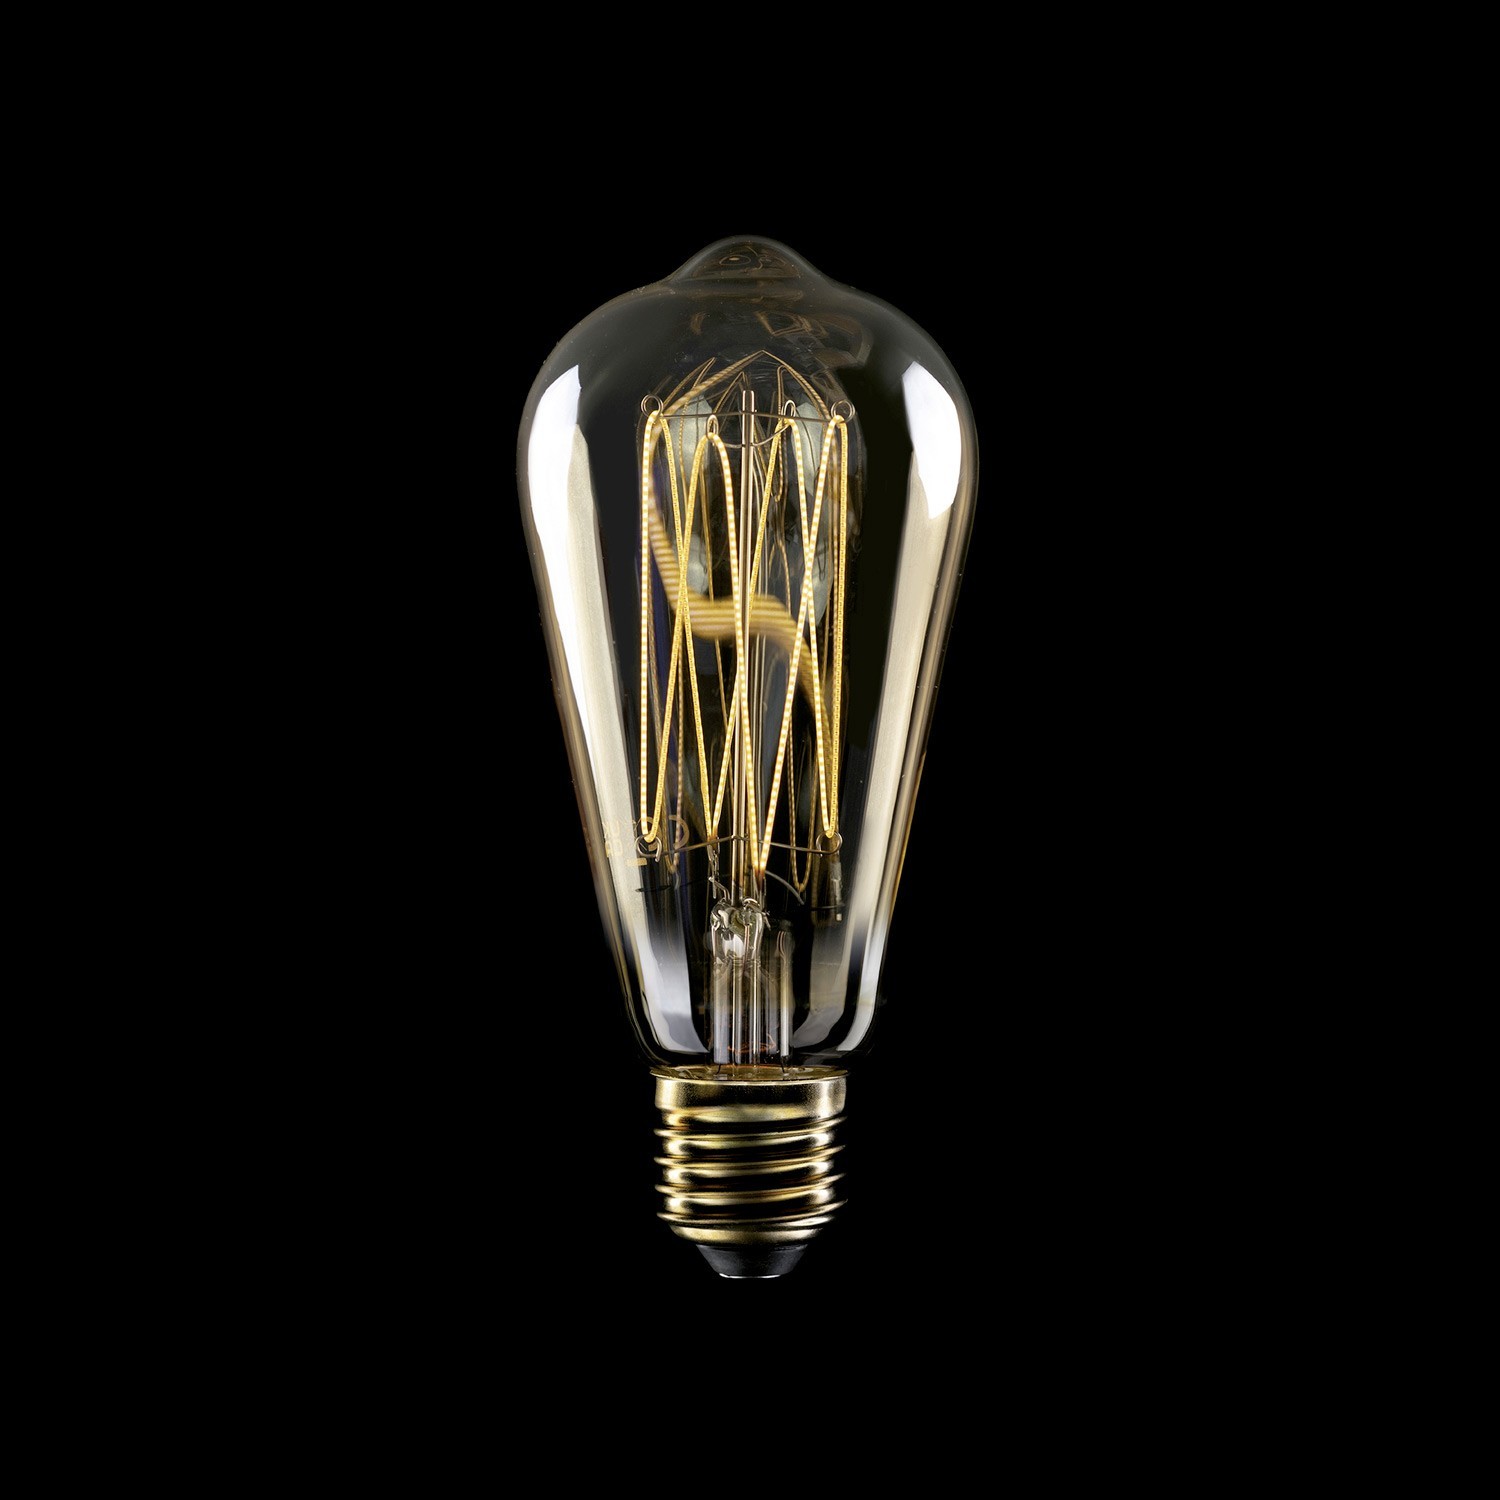 LED arany Edison izzó C54 szénszálas jellegű izzószállal ST64 7W E27 fényerőszabályozható 2700K